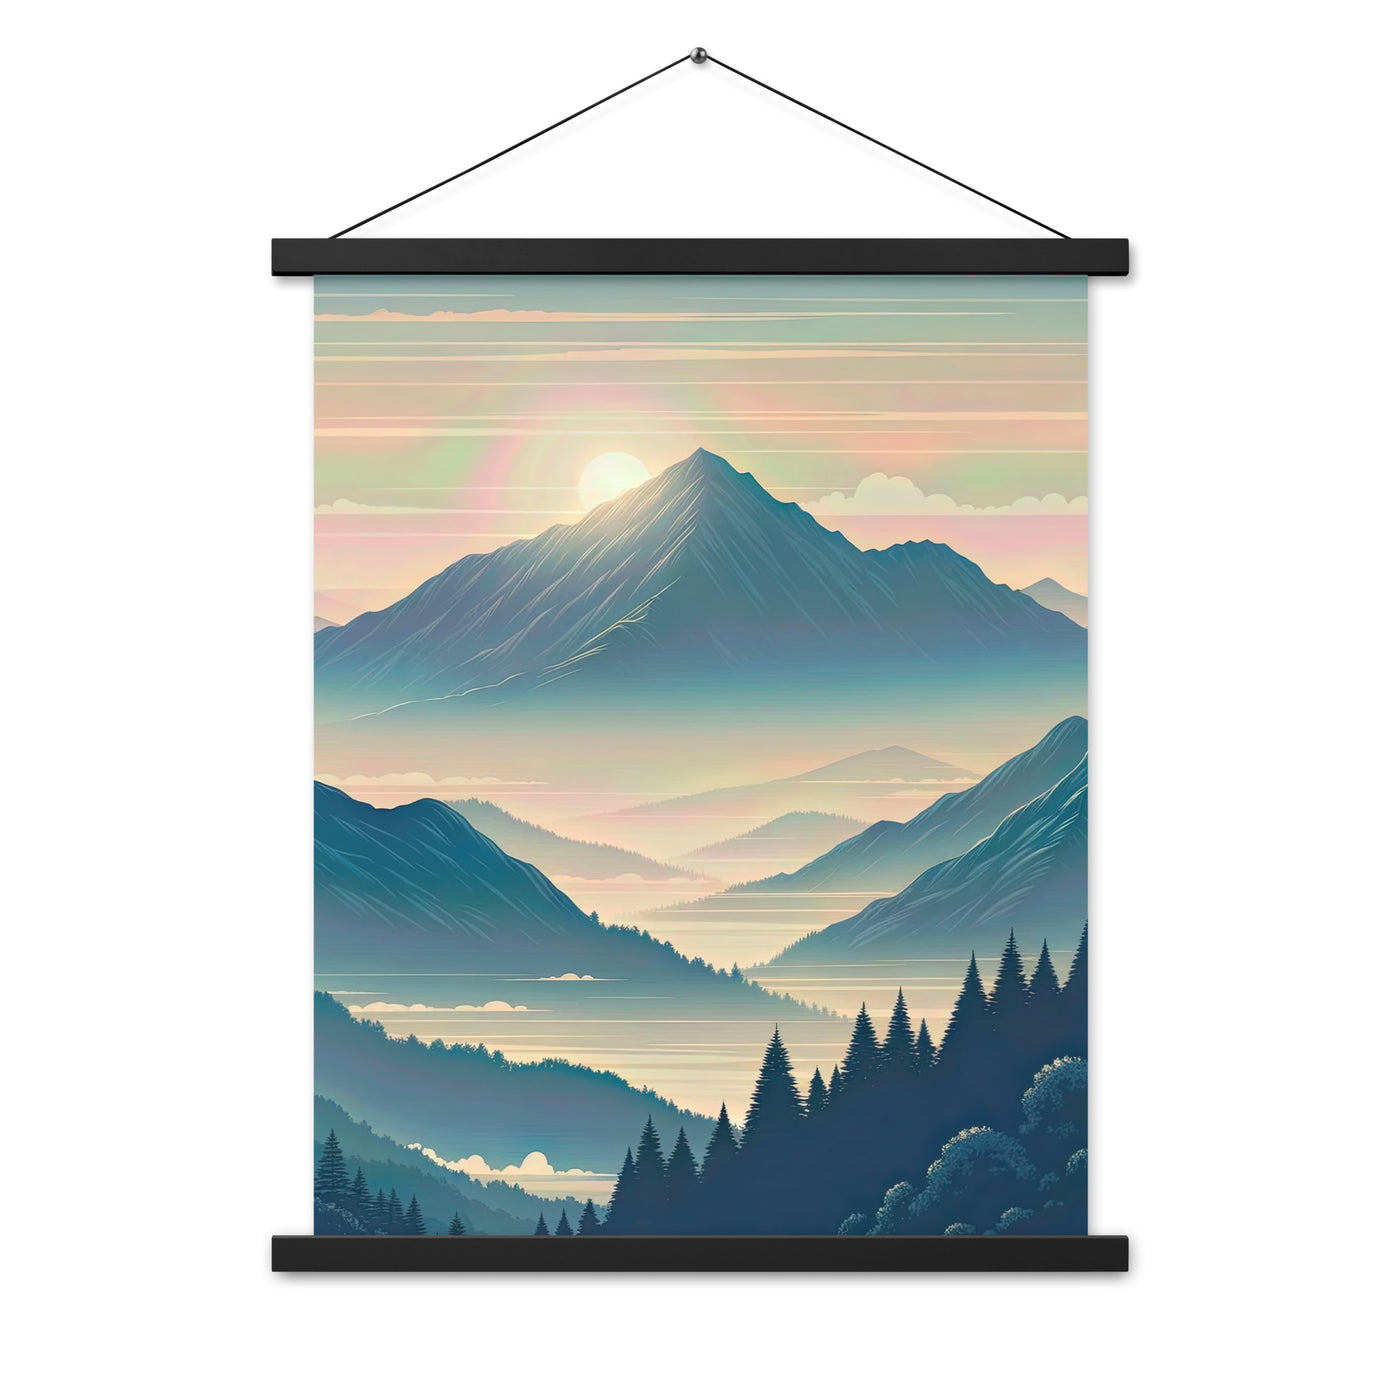 Bergszene bei Morgendämmerung, erste Sonnenstrahlen auf Bergrücken - Premium Poster mit Aufhängung berge xxx yyy zzz 45.7 x 61 cm